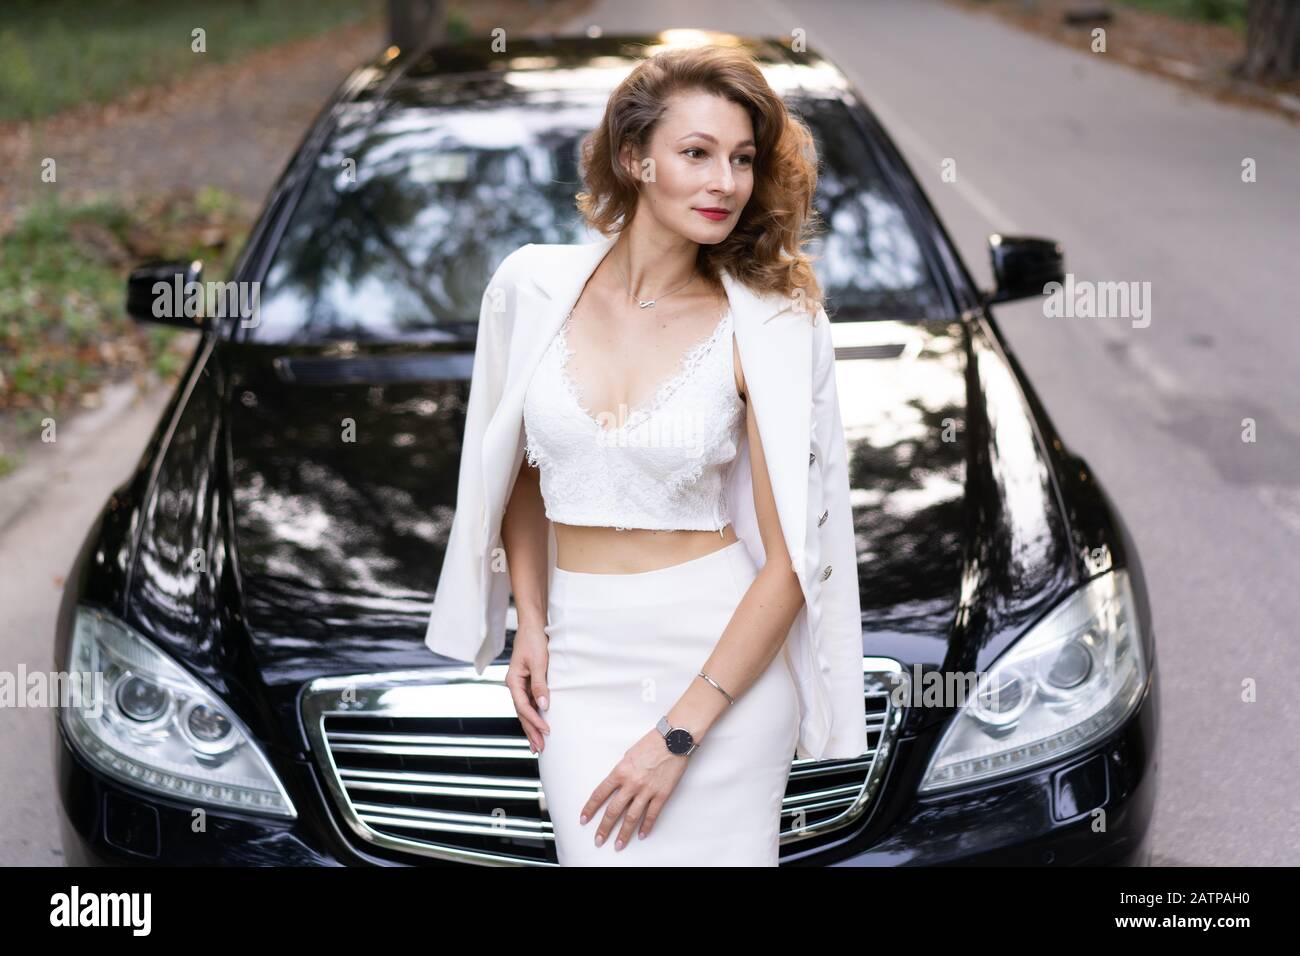 Schöne Frau in elegantem Outfit, in der Nähe des Autos stehend und wegblickend. Stockfoto